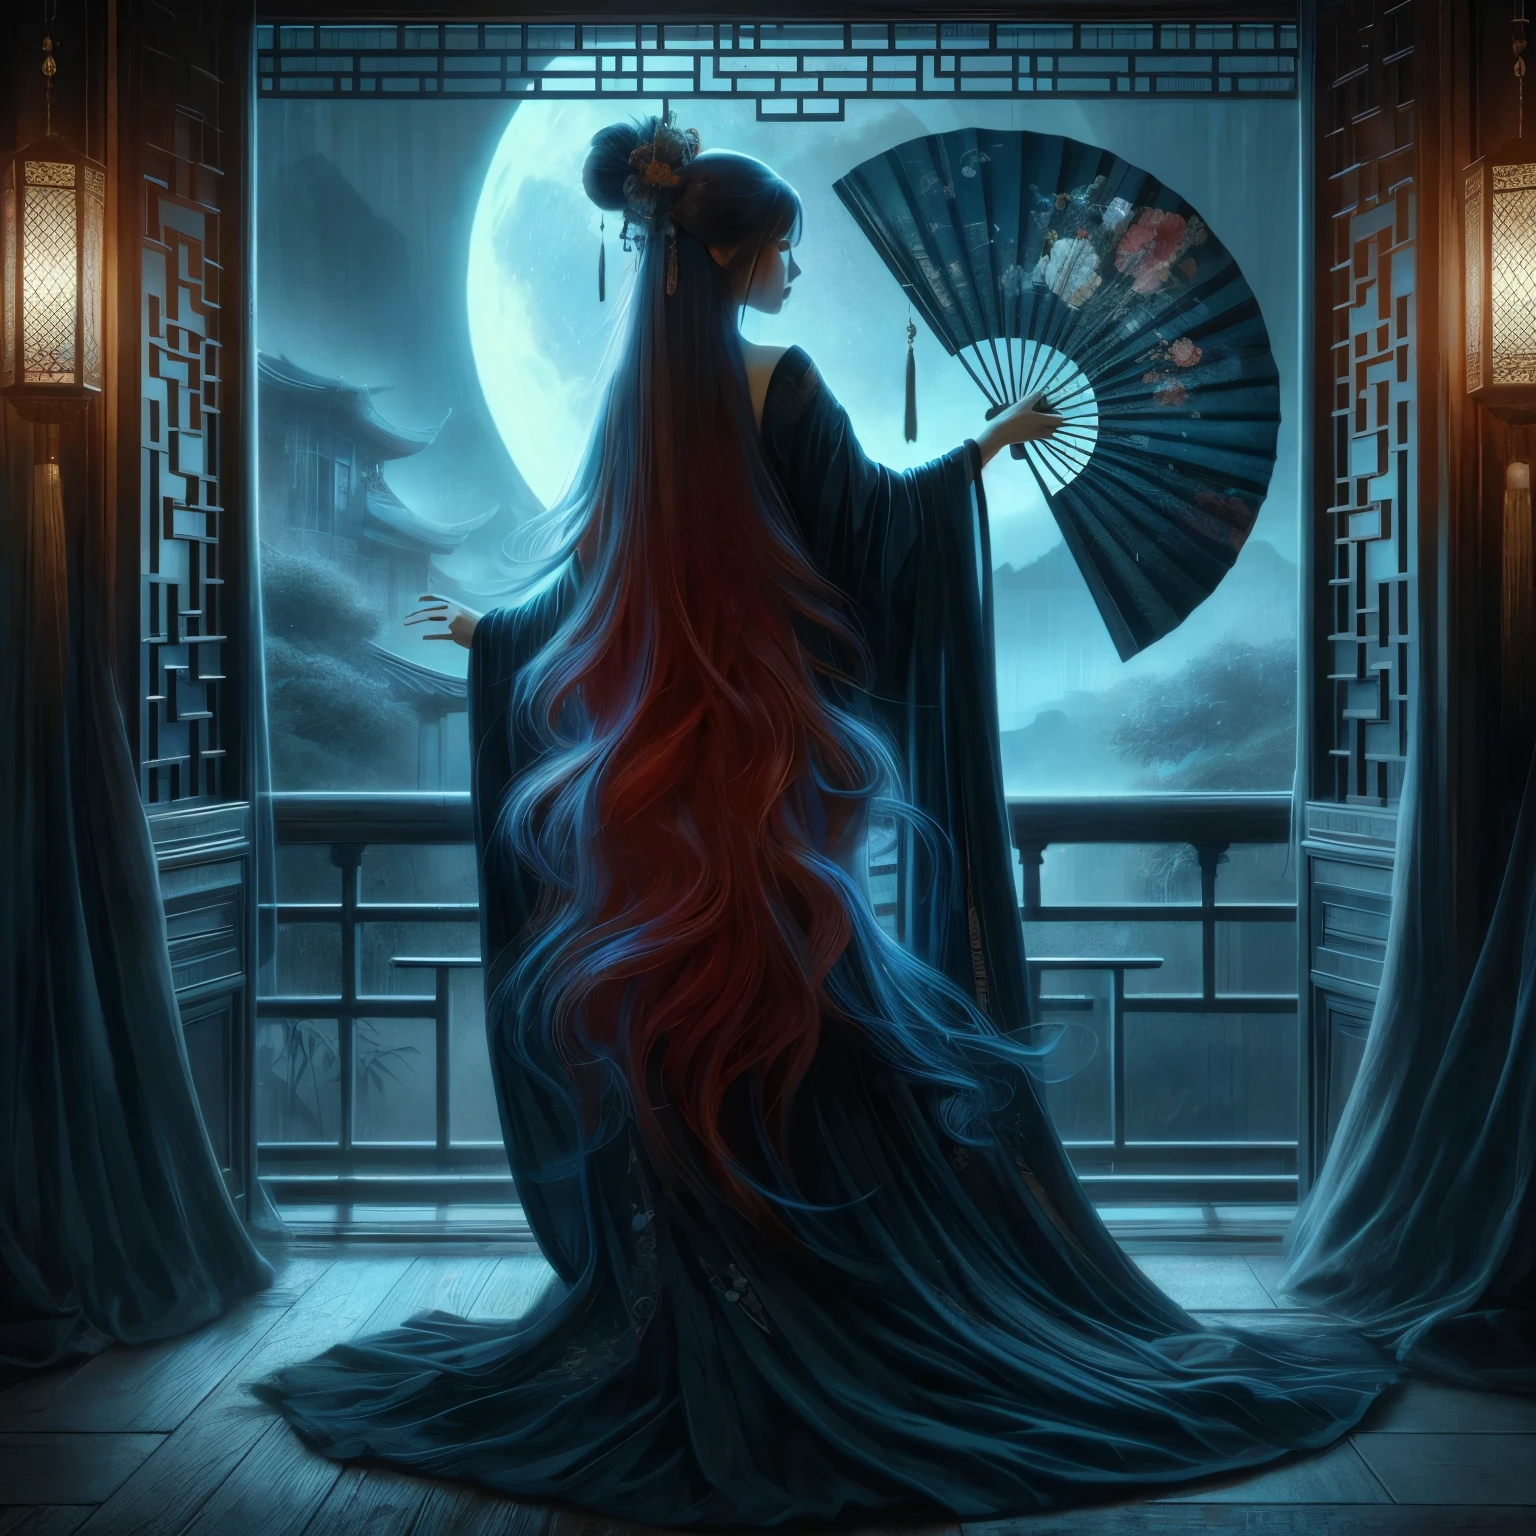 Ультра красивая азиатка с длинными красно-золотистыми синими волосами., держит очень богато украшенный длинный черный древний азиатский боевой веер, наполненный спиртным, в длинном черном китаянском халате, в затемненной комнате лунный свет проникает через открытое окно балкона, Китайский сад, ночное небо, чернила, В стиле Караваджо, Фань Чжунчжэн, и да Винчи, разрешение 8к, гипердетализированный, Фотореалистичный, художественный стиль масляной живописи, нюансированный,